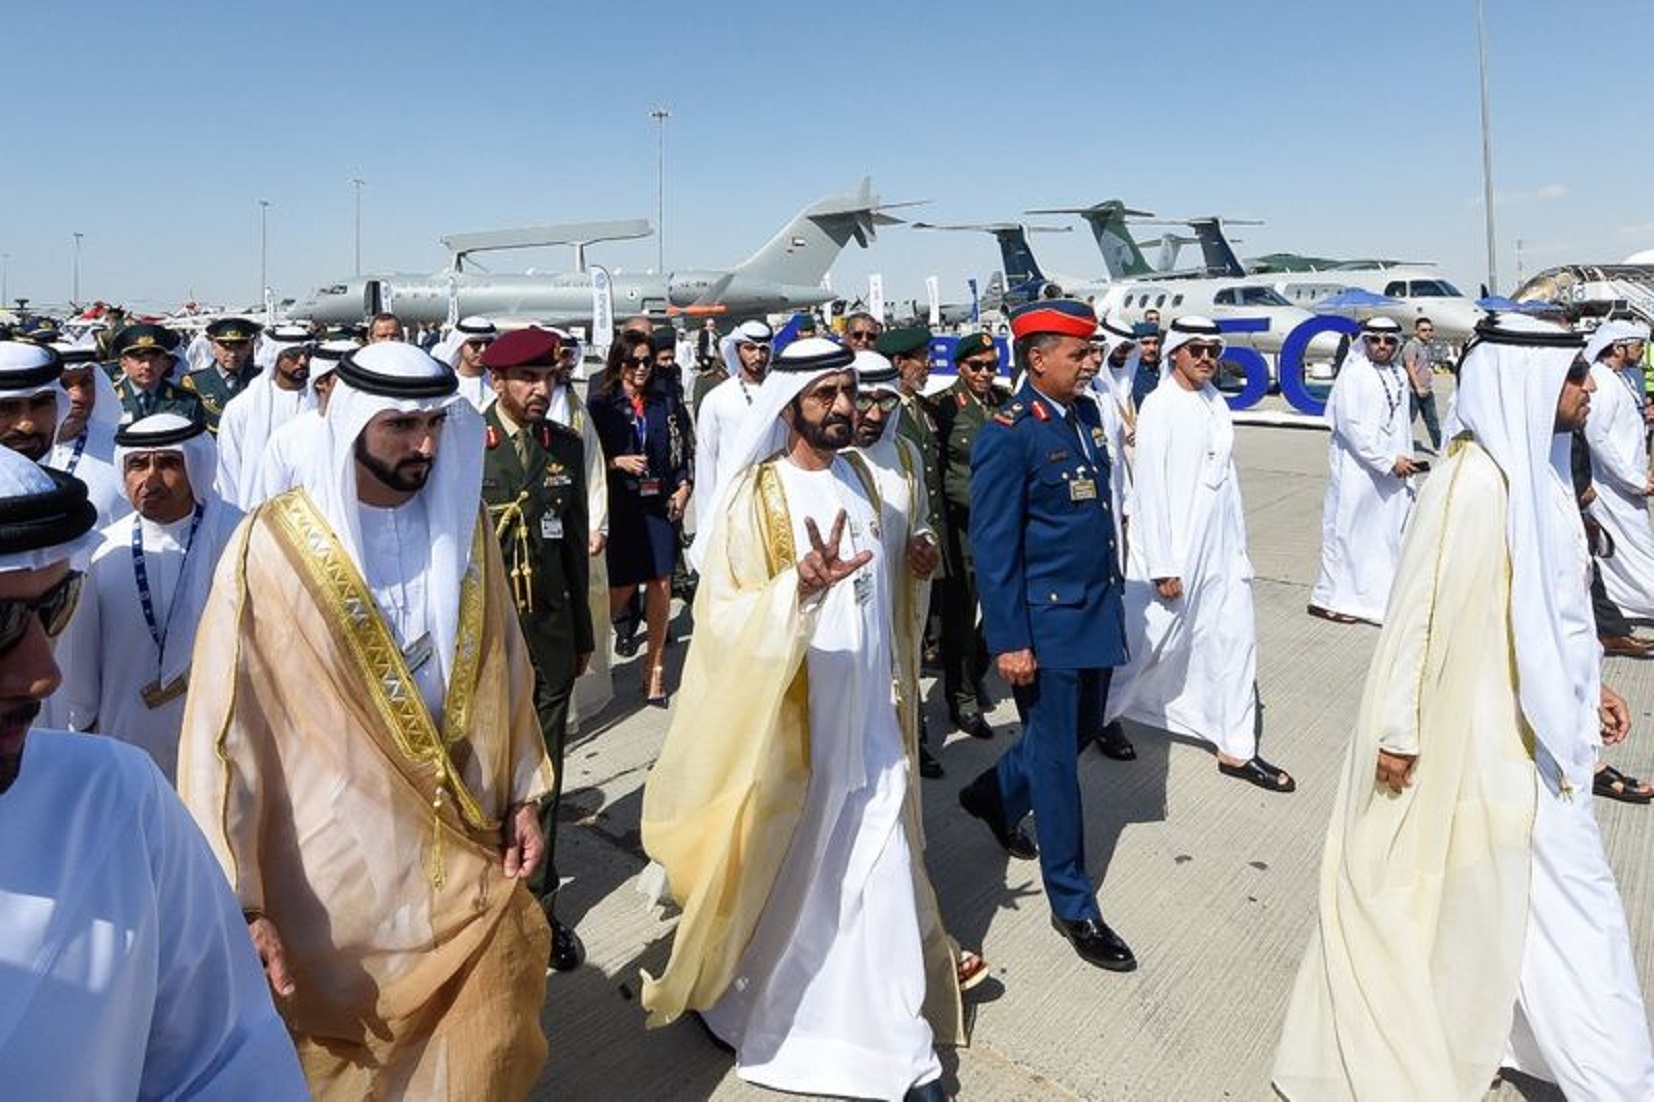 UAE Leaders Open Dubai Airshow 2019